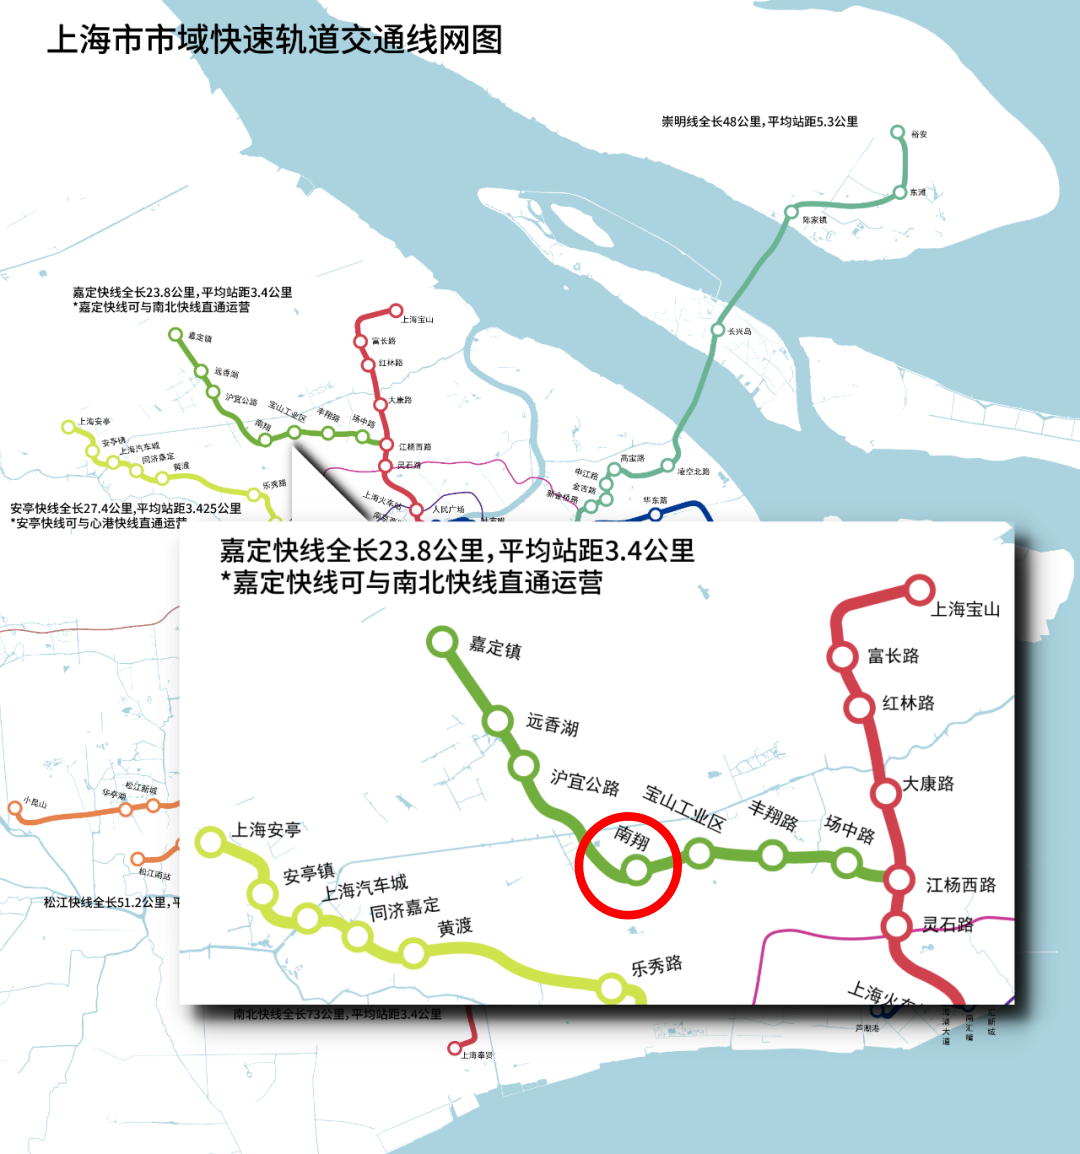 在下方这张上海规划市域快速轨交网图中,位于西北部嘉定方向的嘉定